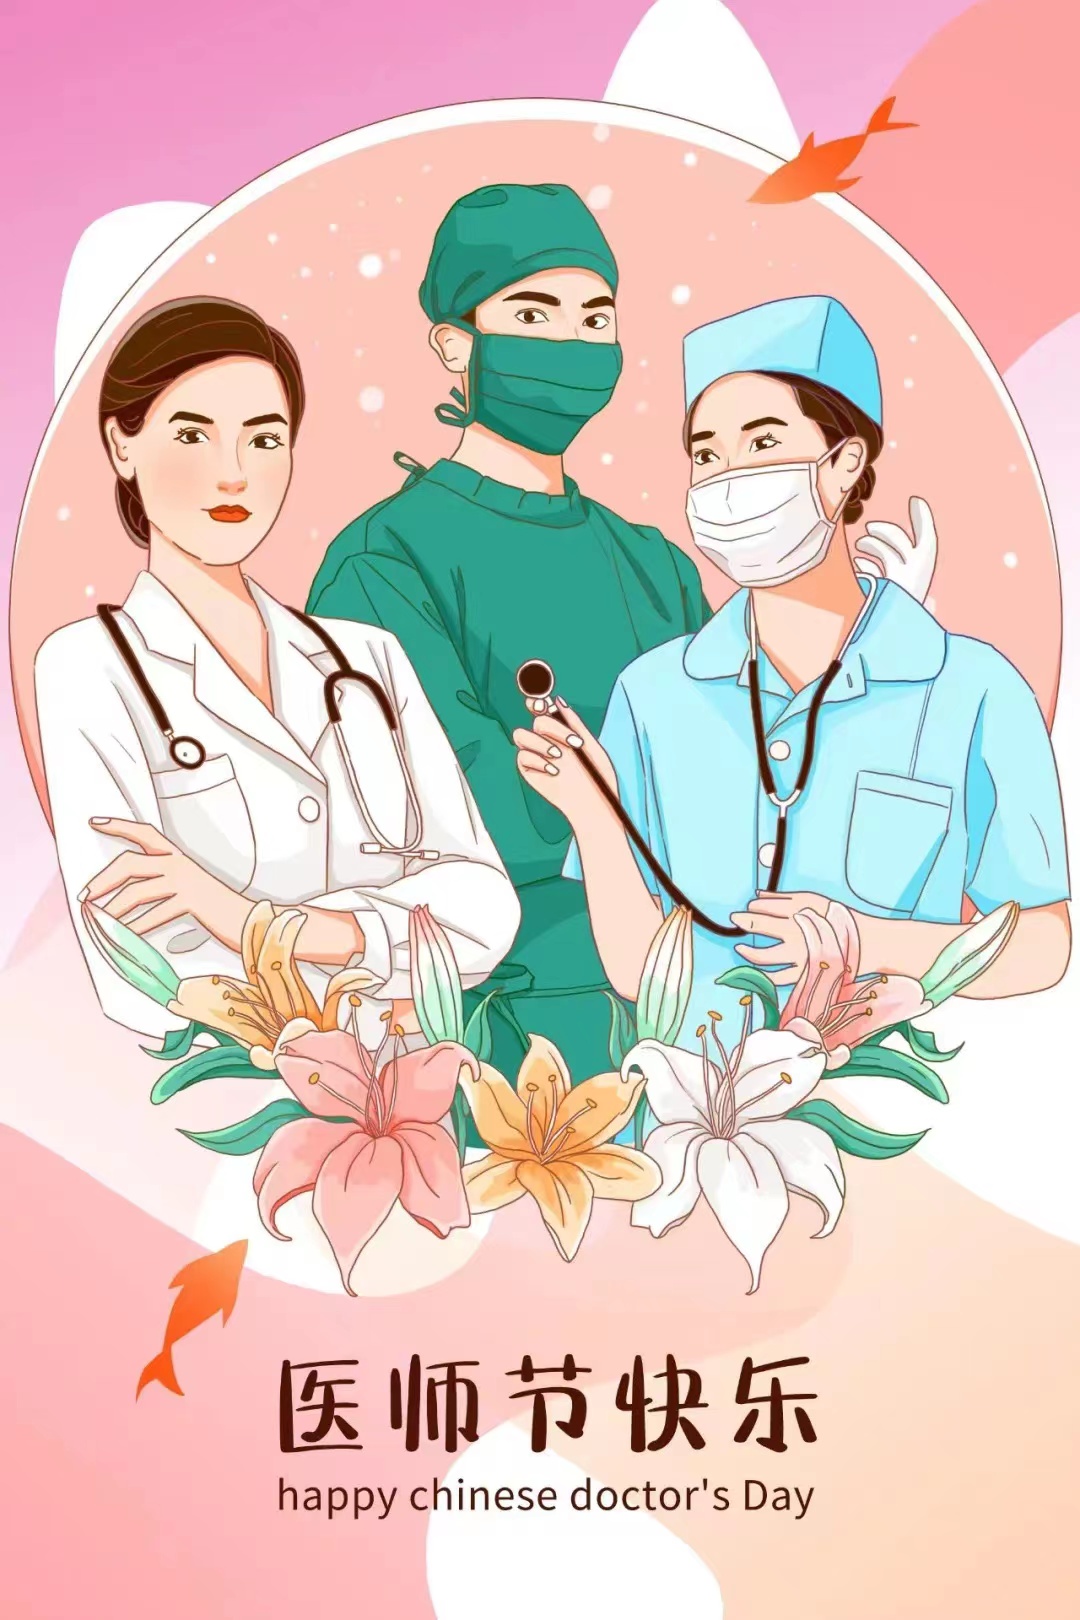 中国医师节快乐！